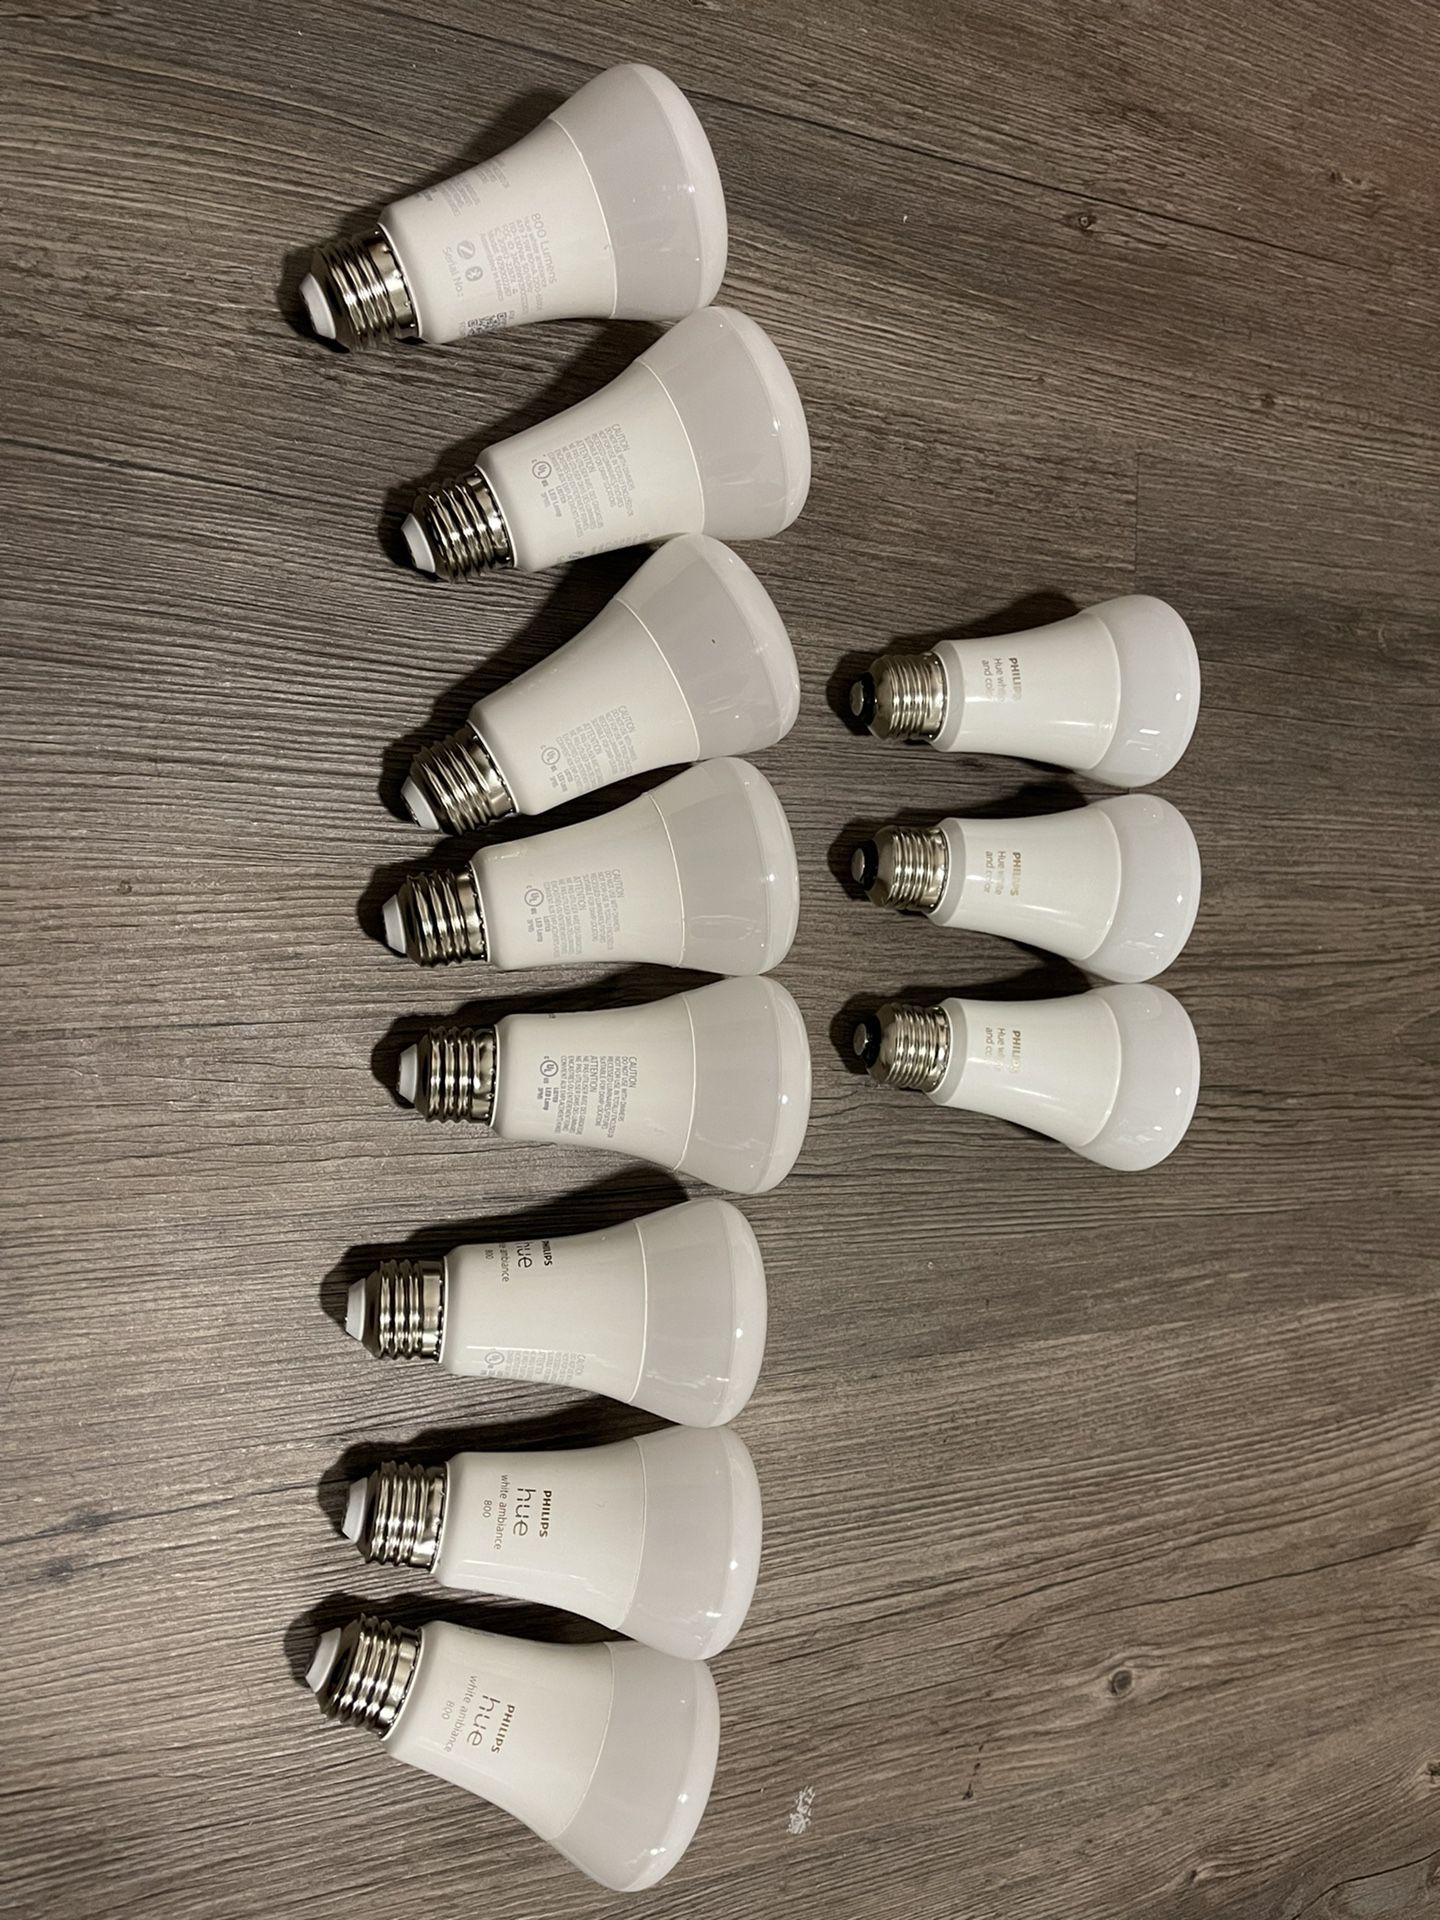 Philips Hue A19 Bulbs $15 Each